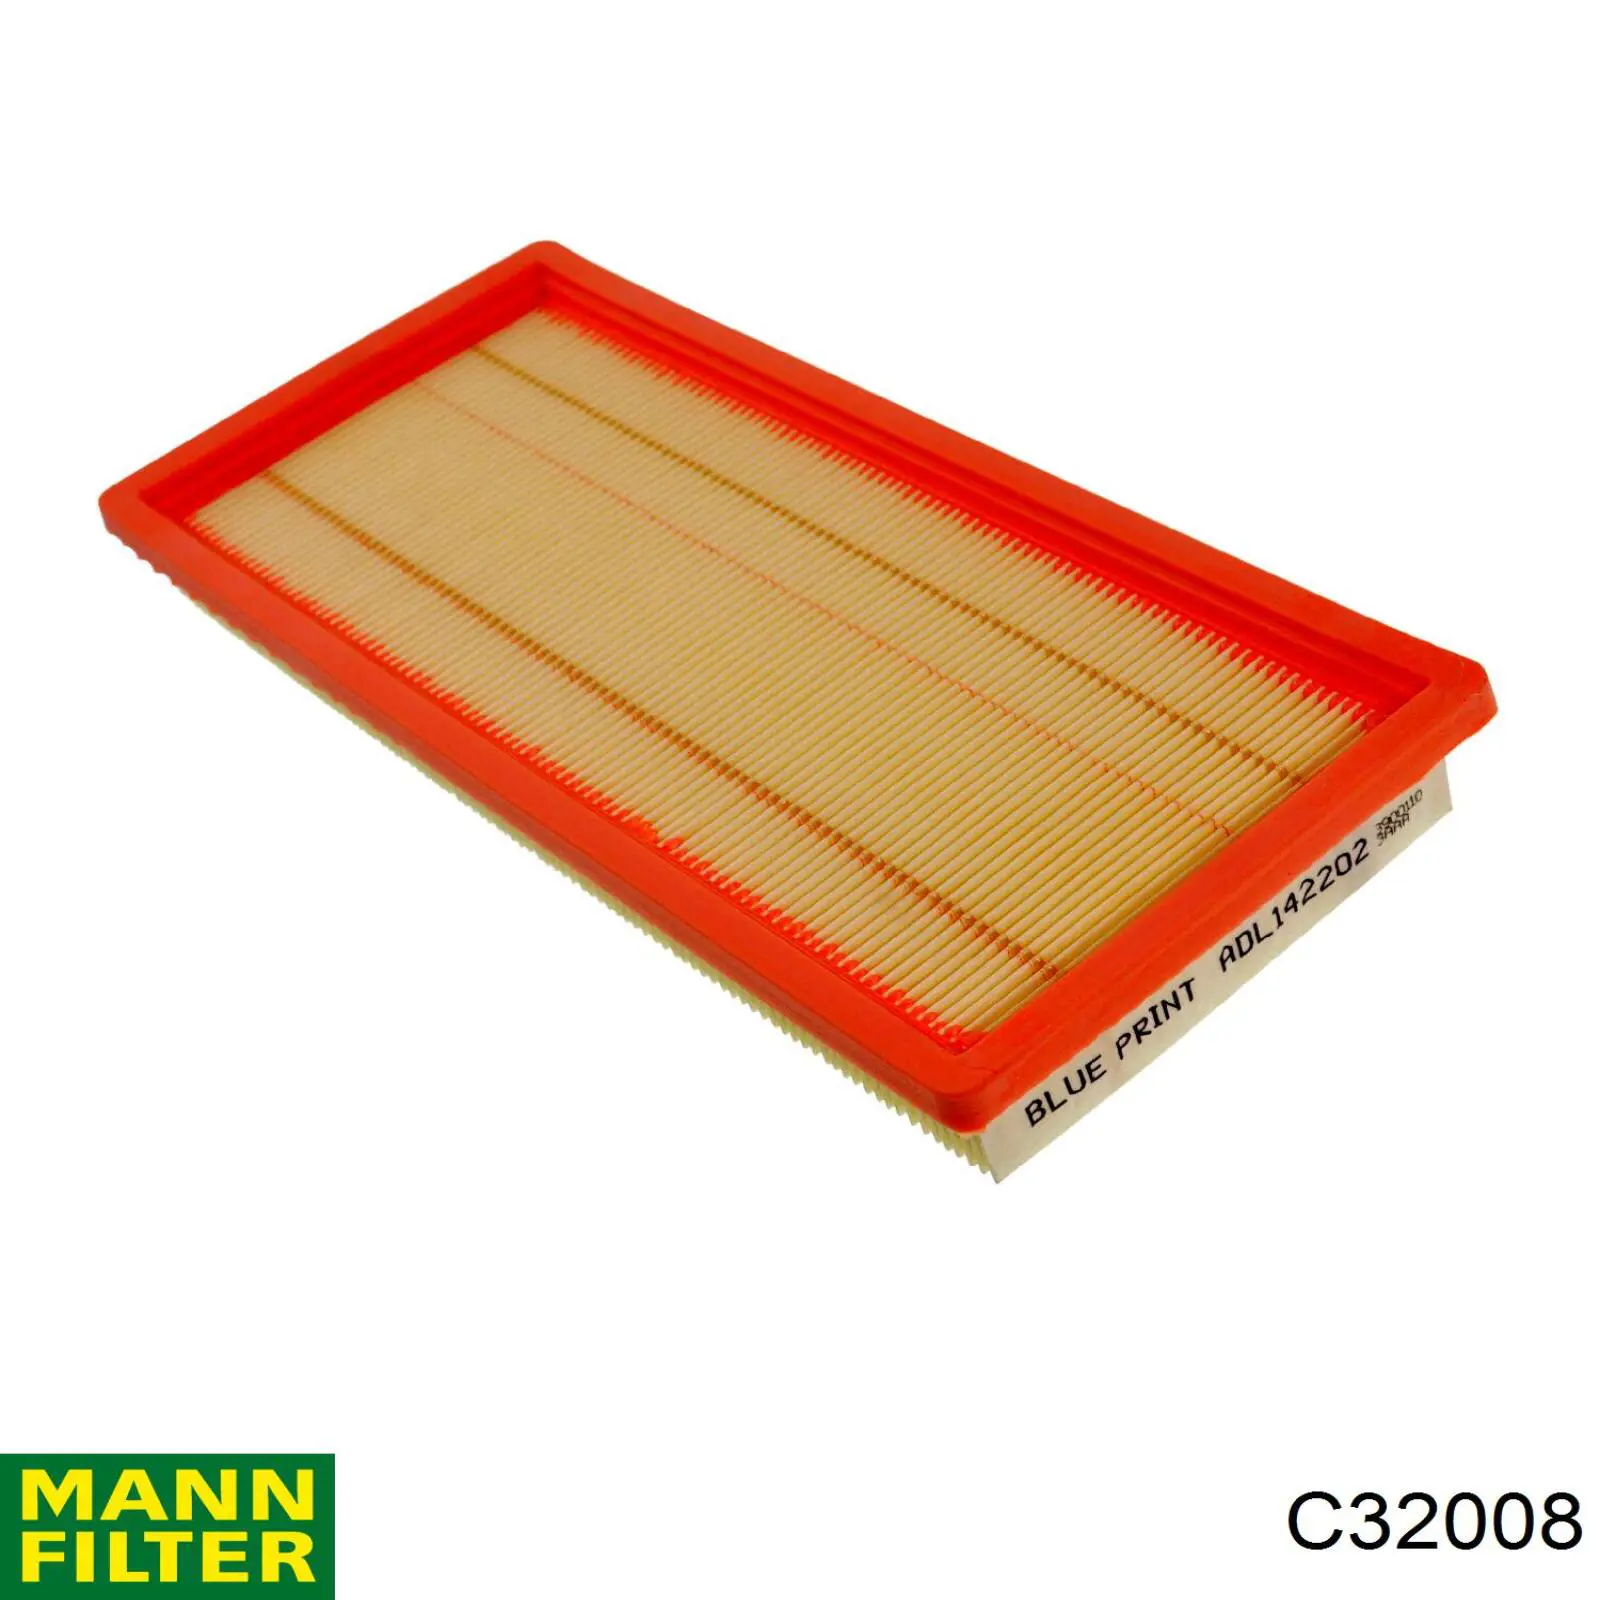 C32008 Mann-Filter filtro de aire